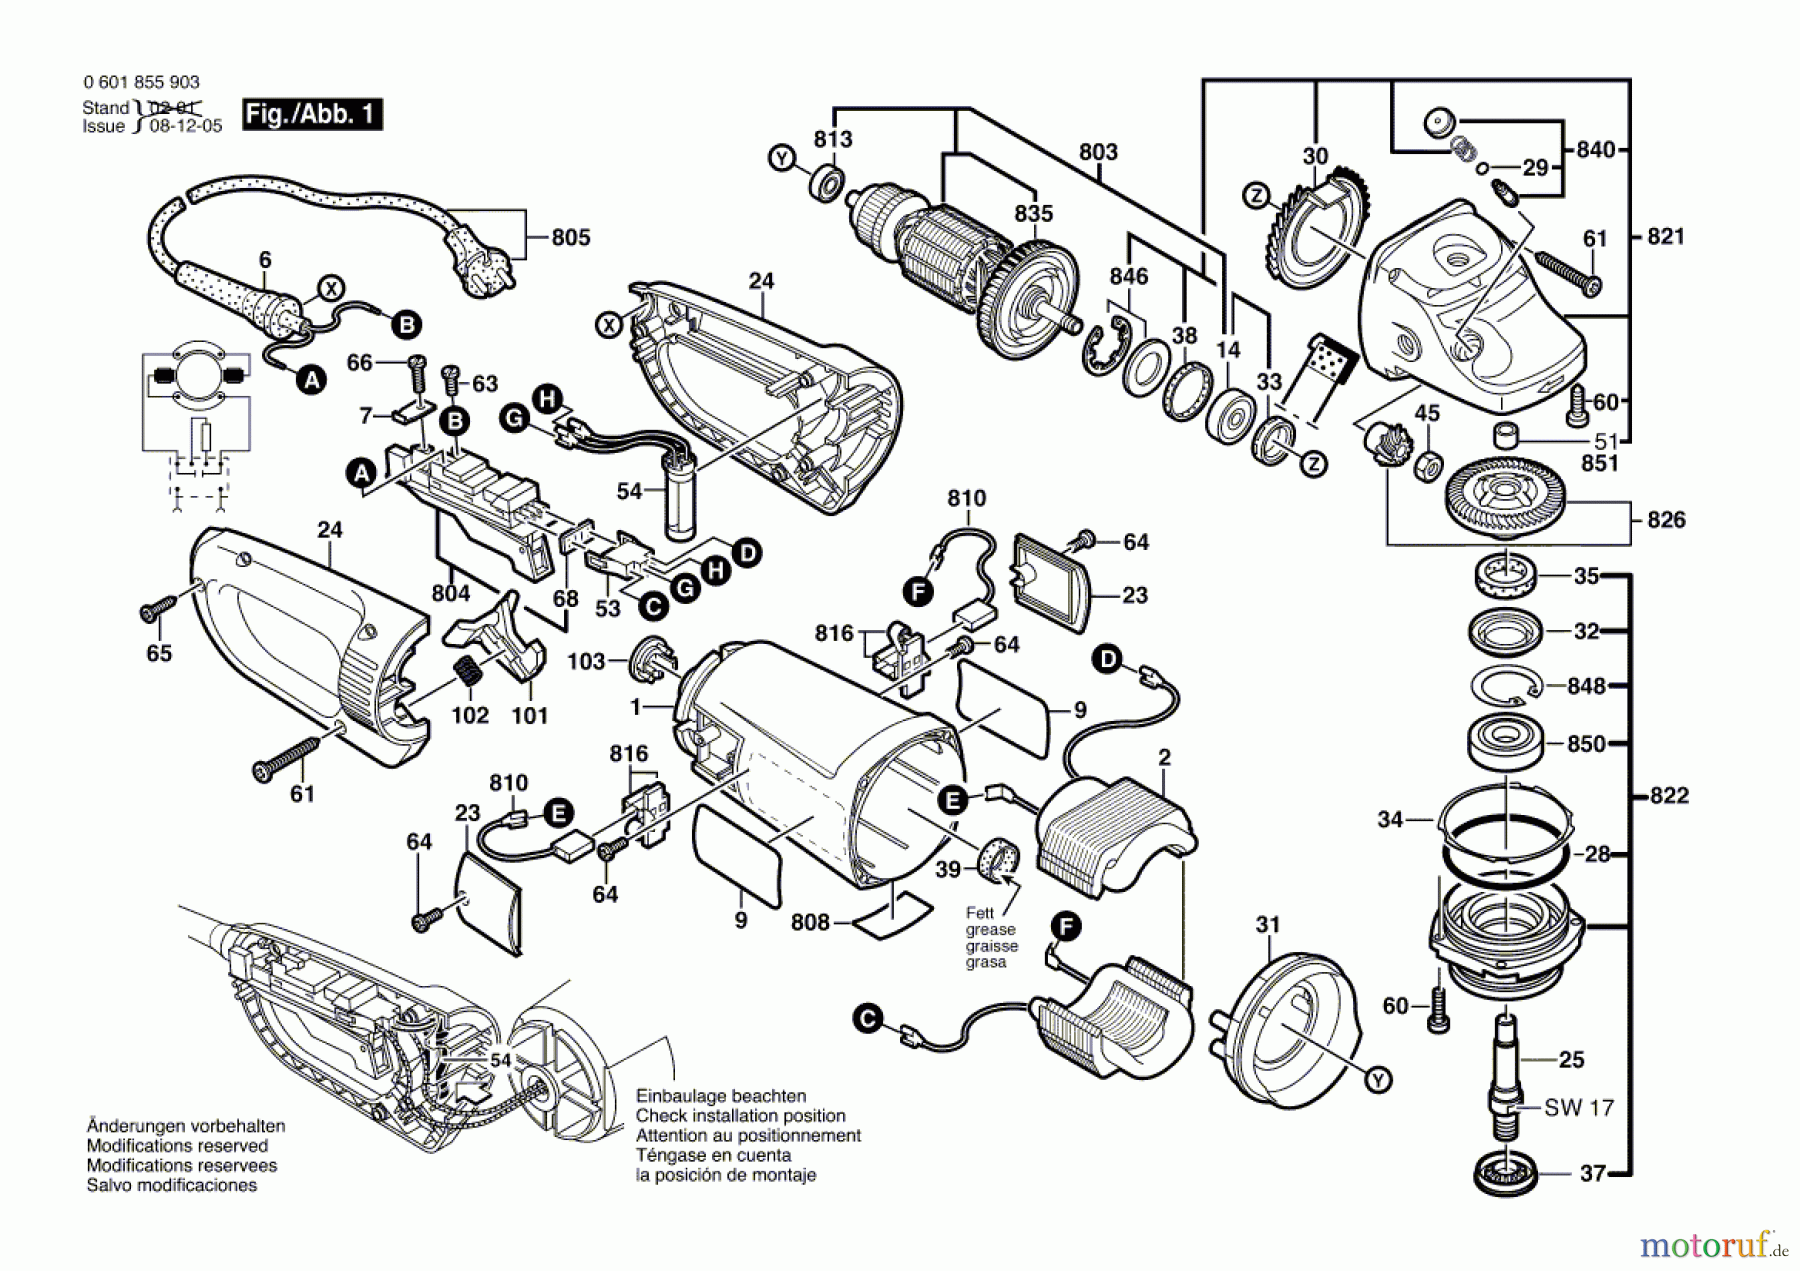  Bosch Werkzeug Winkelschleifer GWS 26-180 JB Seite 1